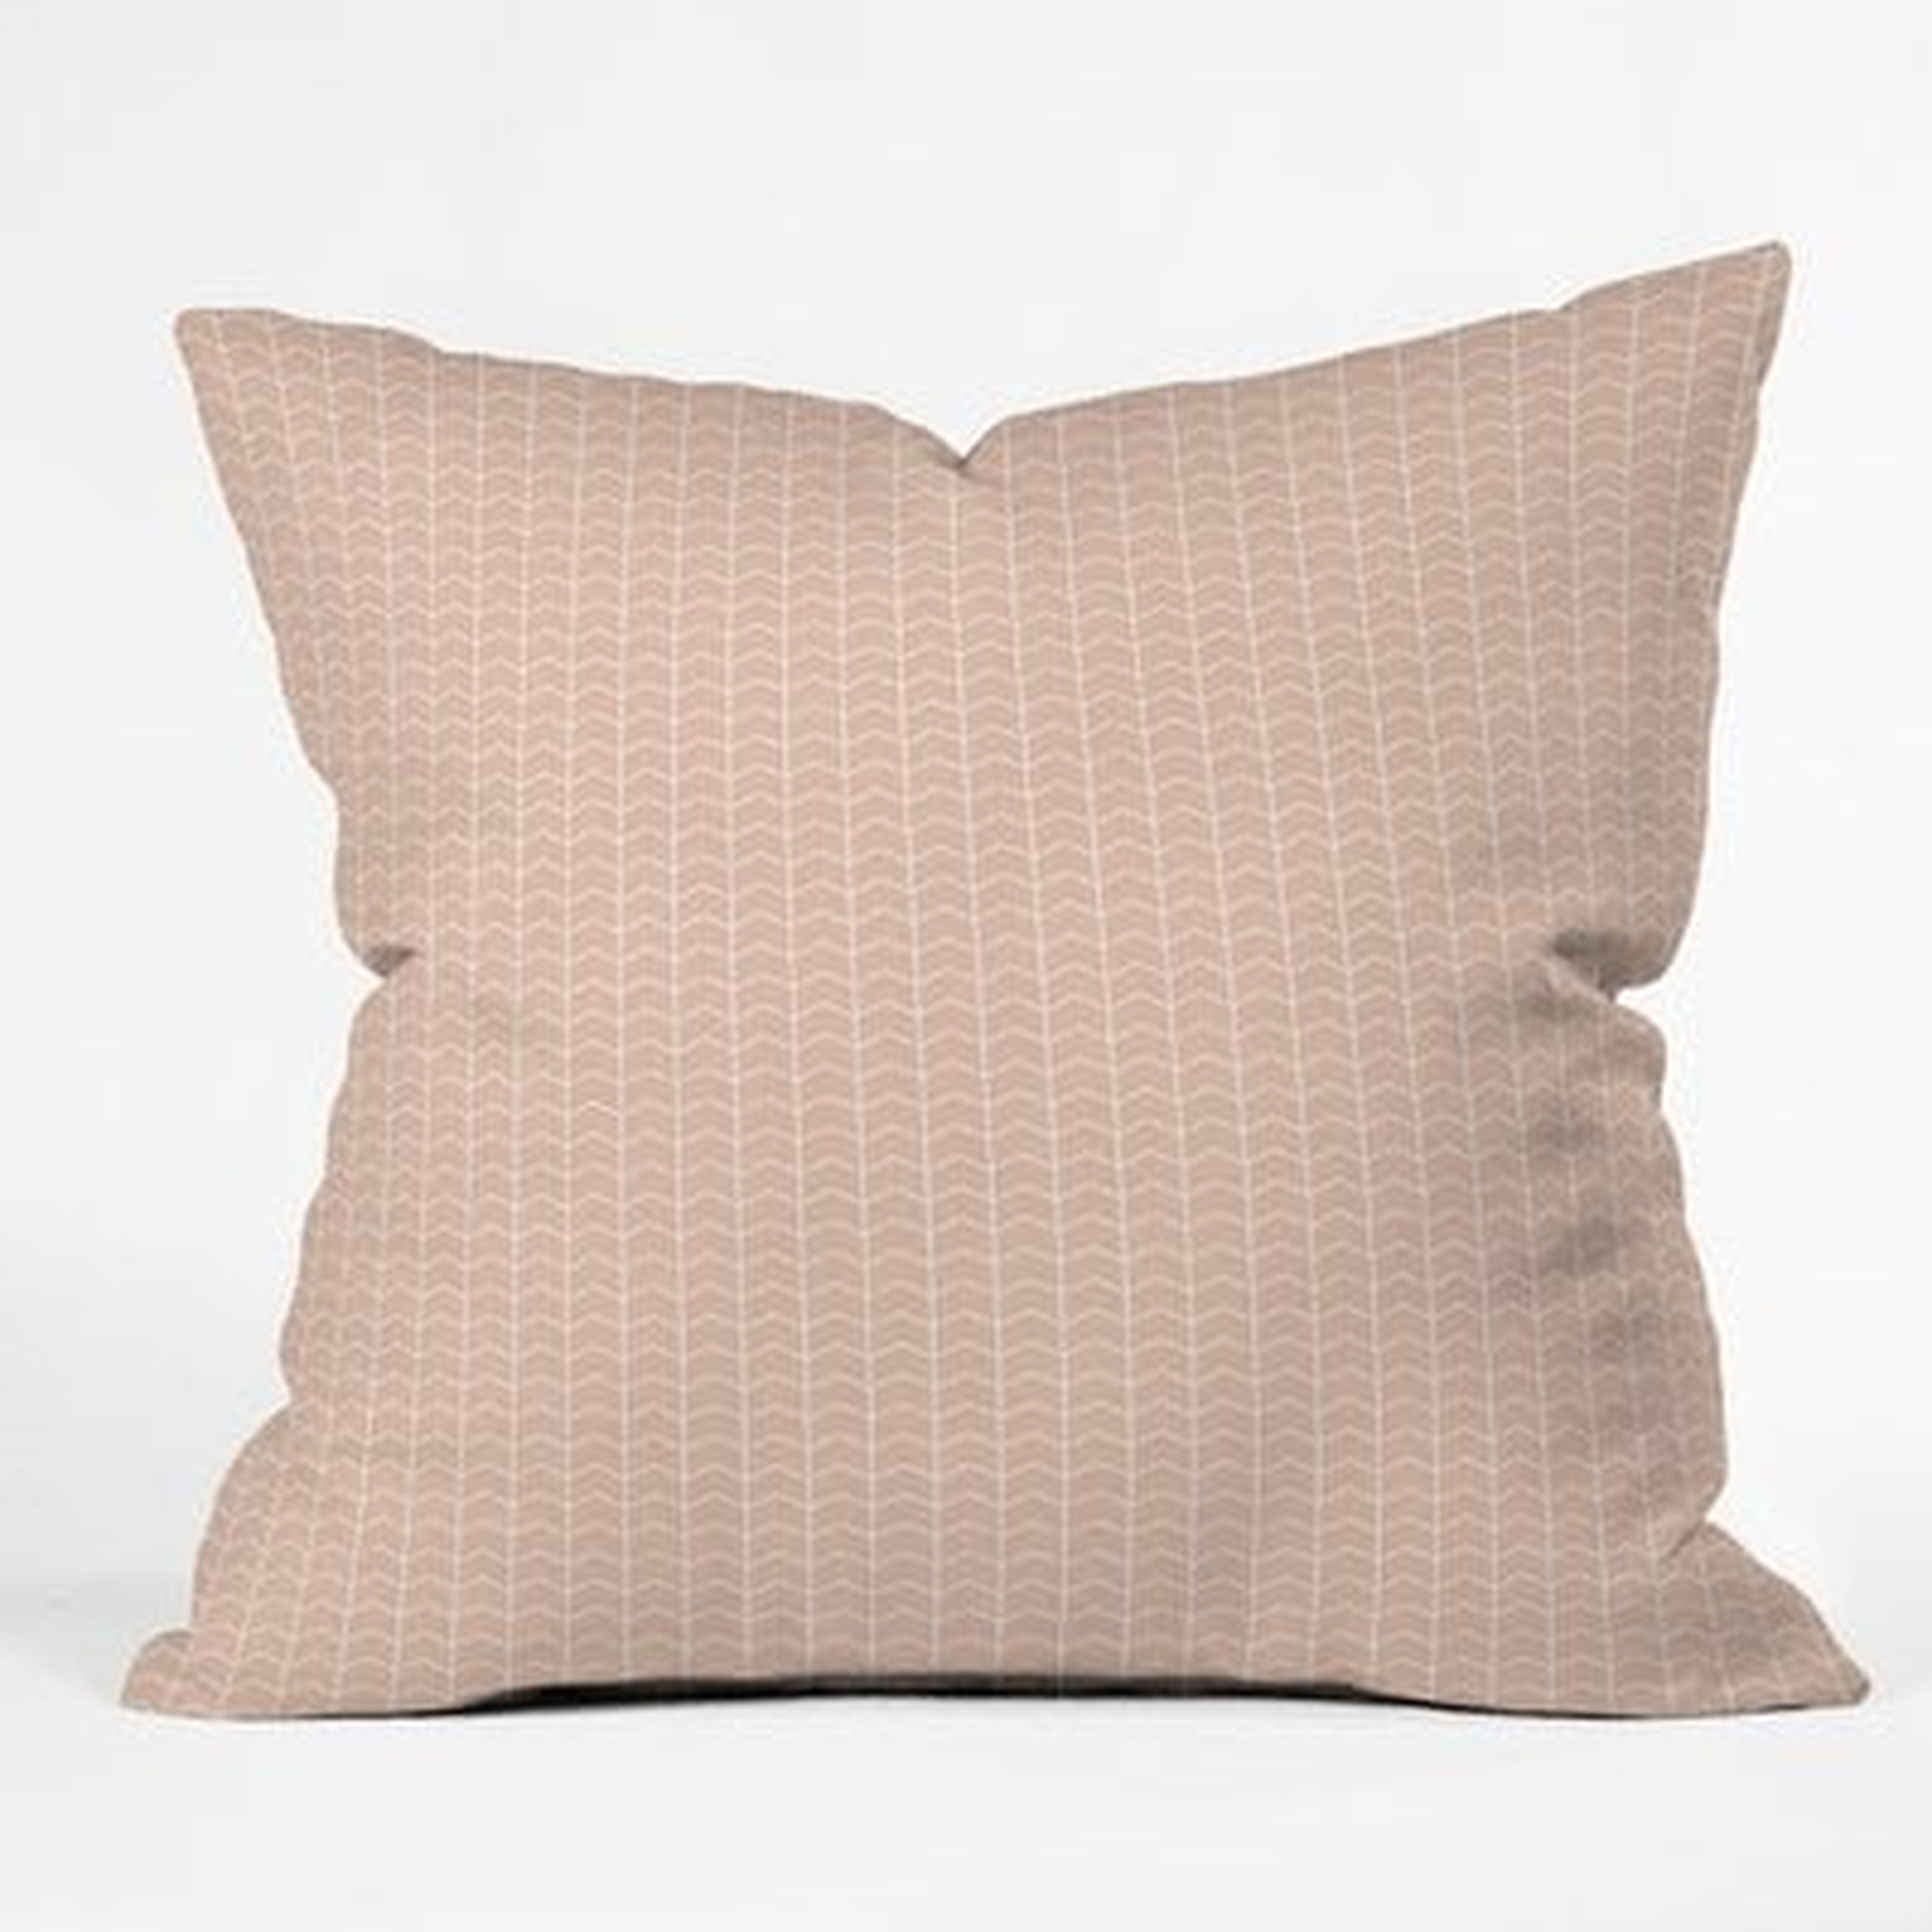 Little Arrow Design Co Boreas Blush Indoor/Outdoor Throw Pillow - Wayfair